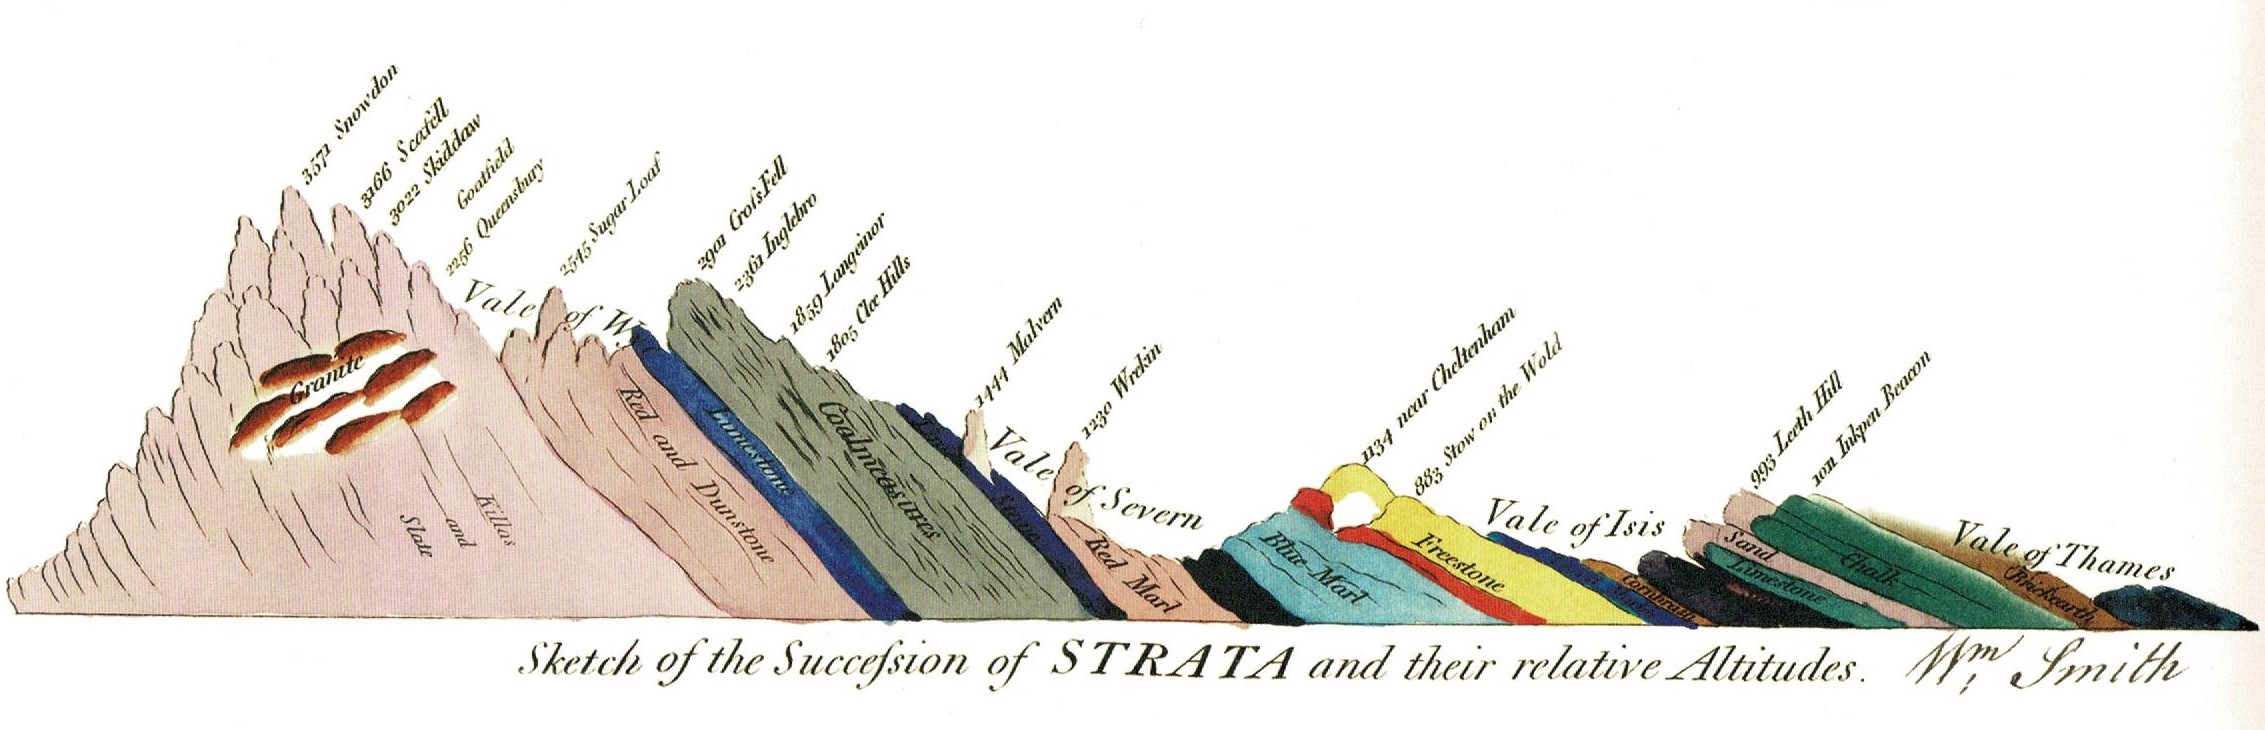 William Smith's Succession of Strata